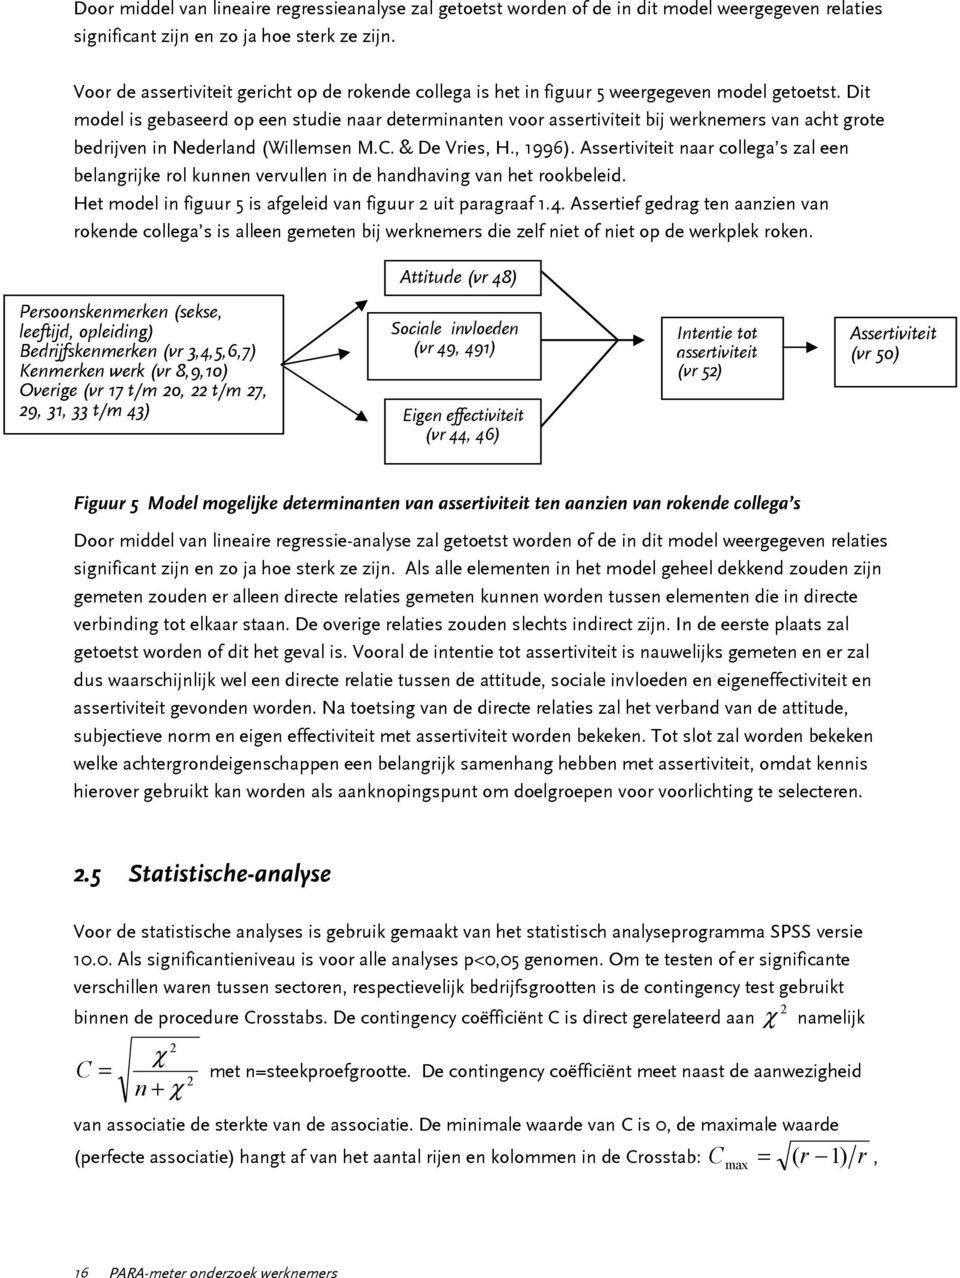 Dit model is gebaseerd op een studie naar determinanten voor assertiviteit bij werknemers van acht grote bedrijven in Nederland (Willemsen M.C. & De Vries, H., 1996).